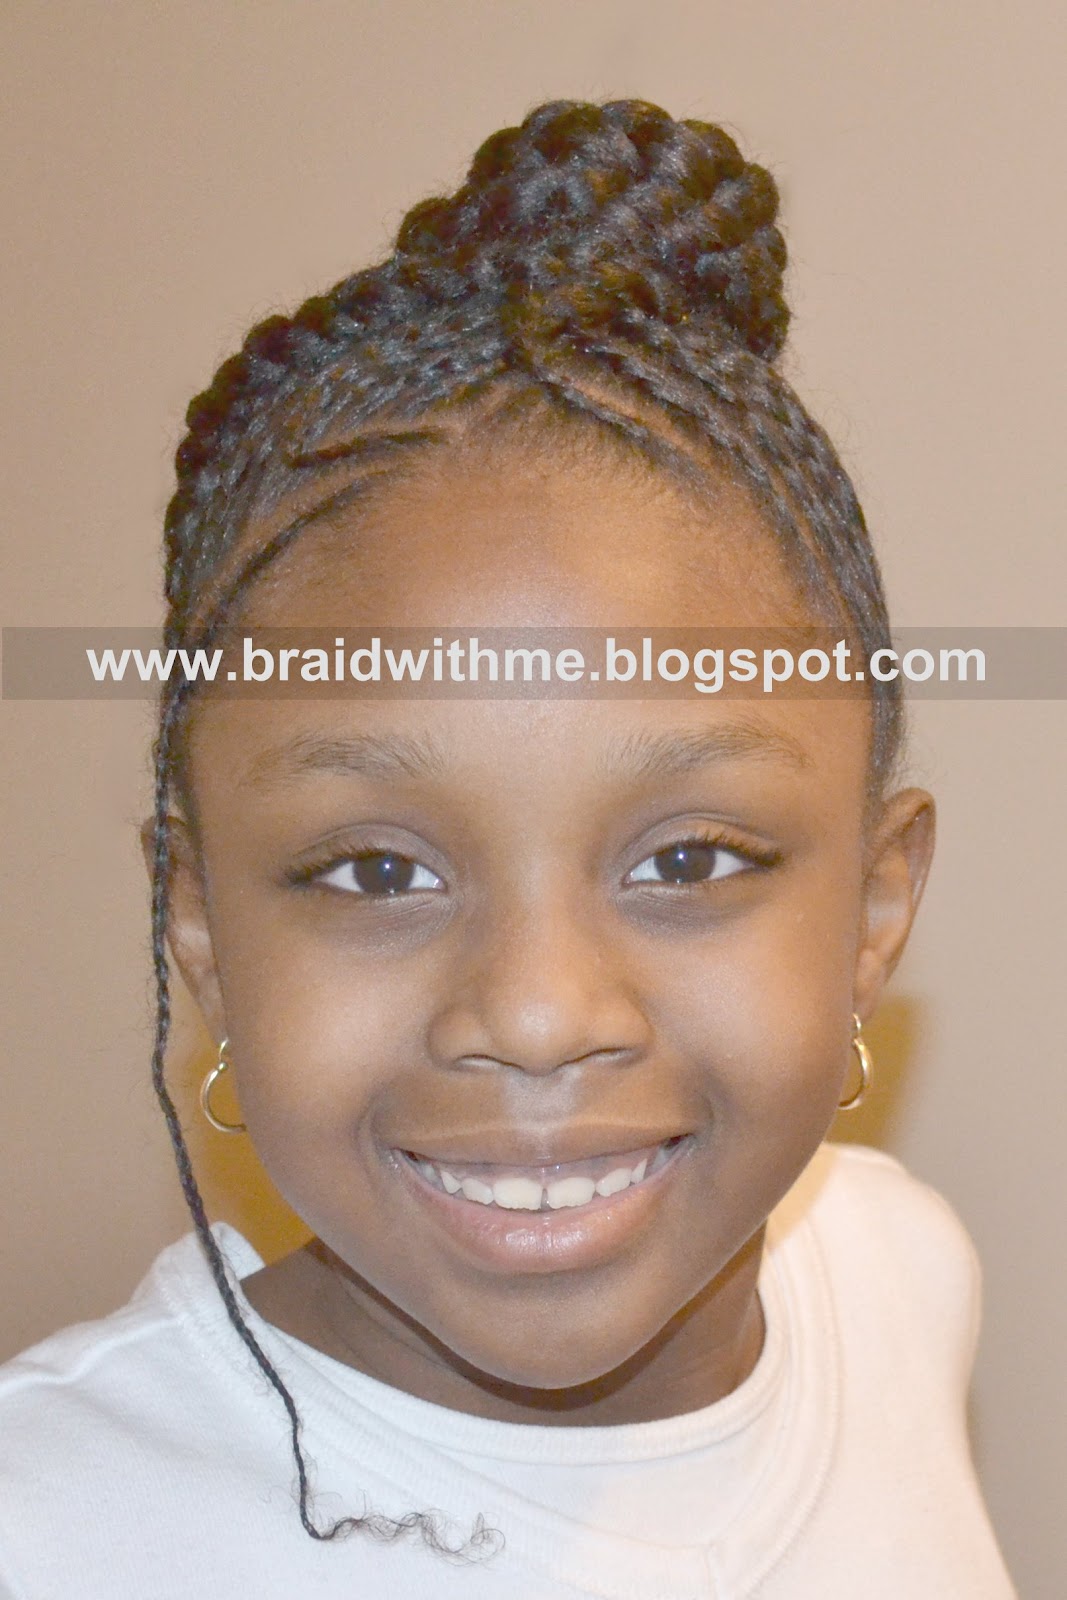 Braided Hairstyles For Short Hair Black Women Braided & Protected - Protective Hair Style on Child's Natural Hair